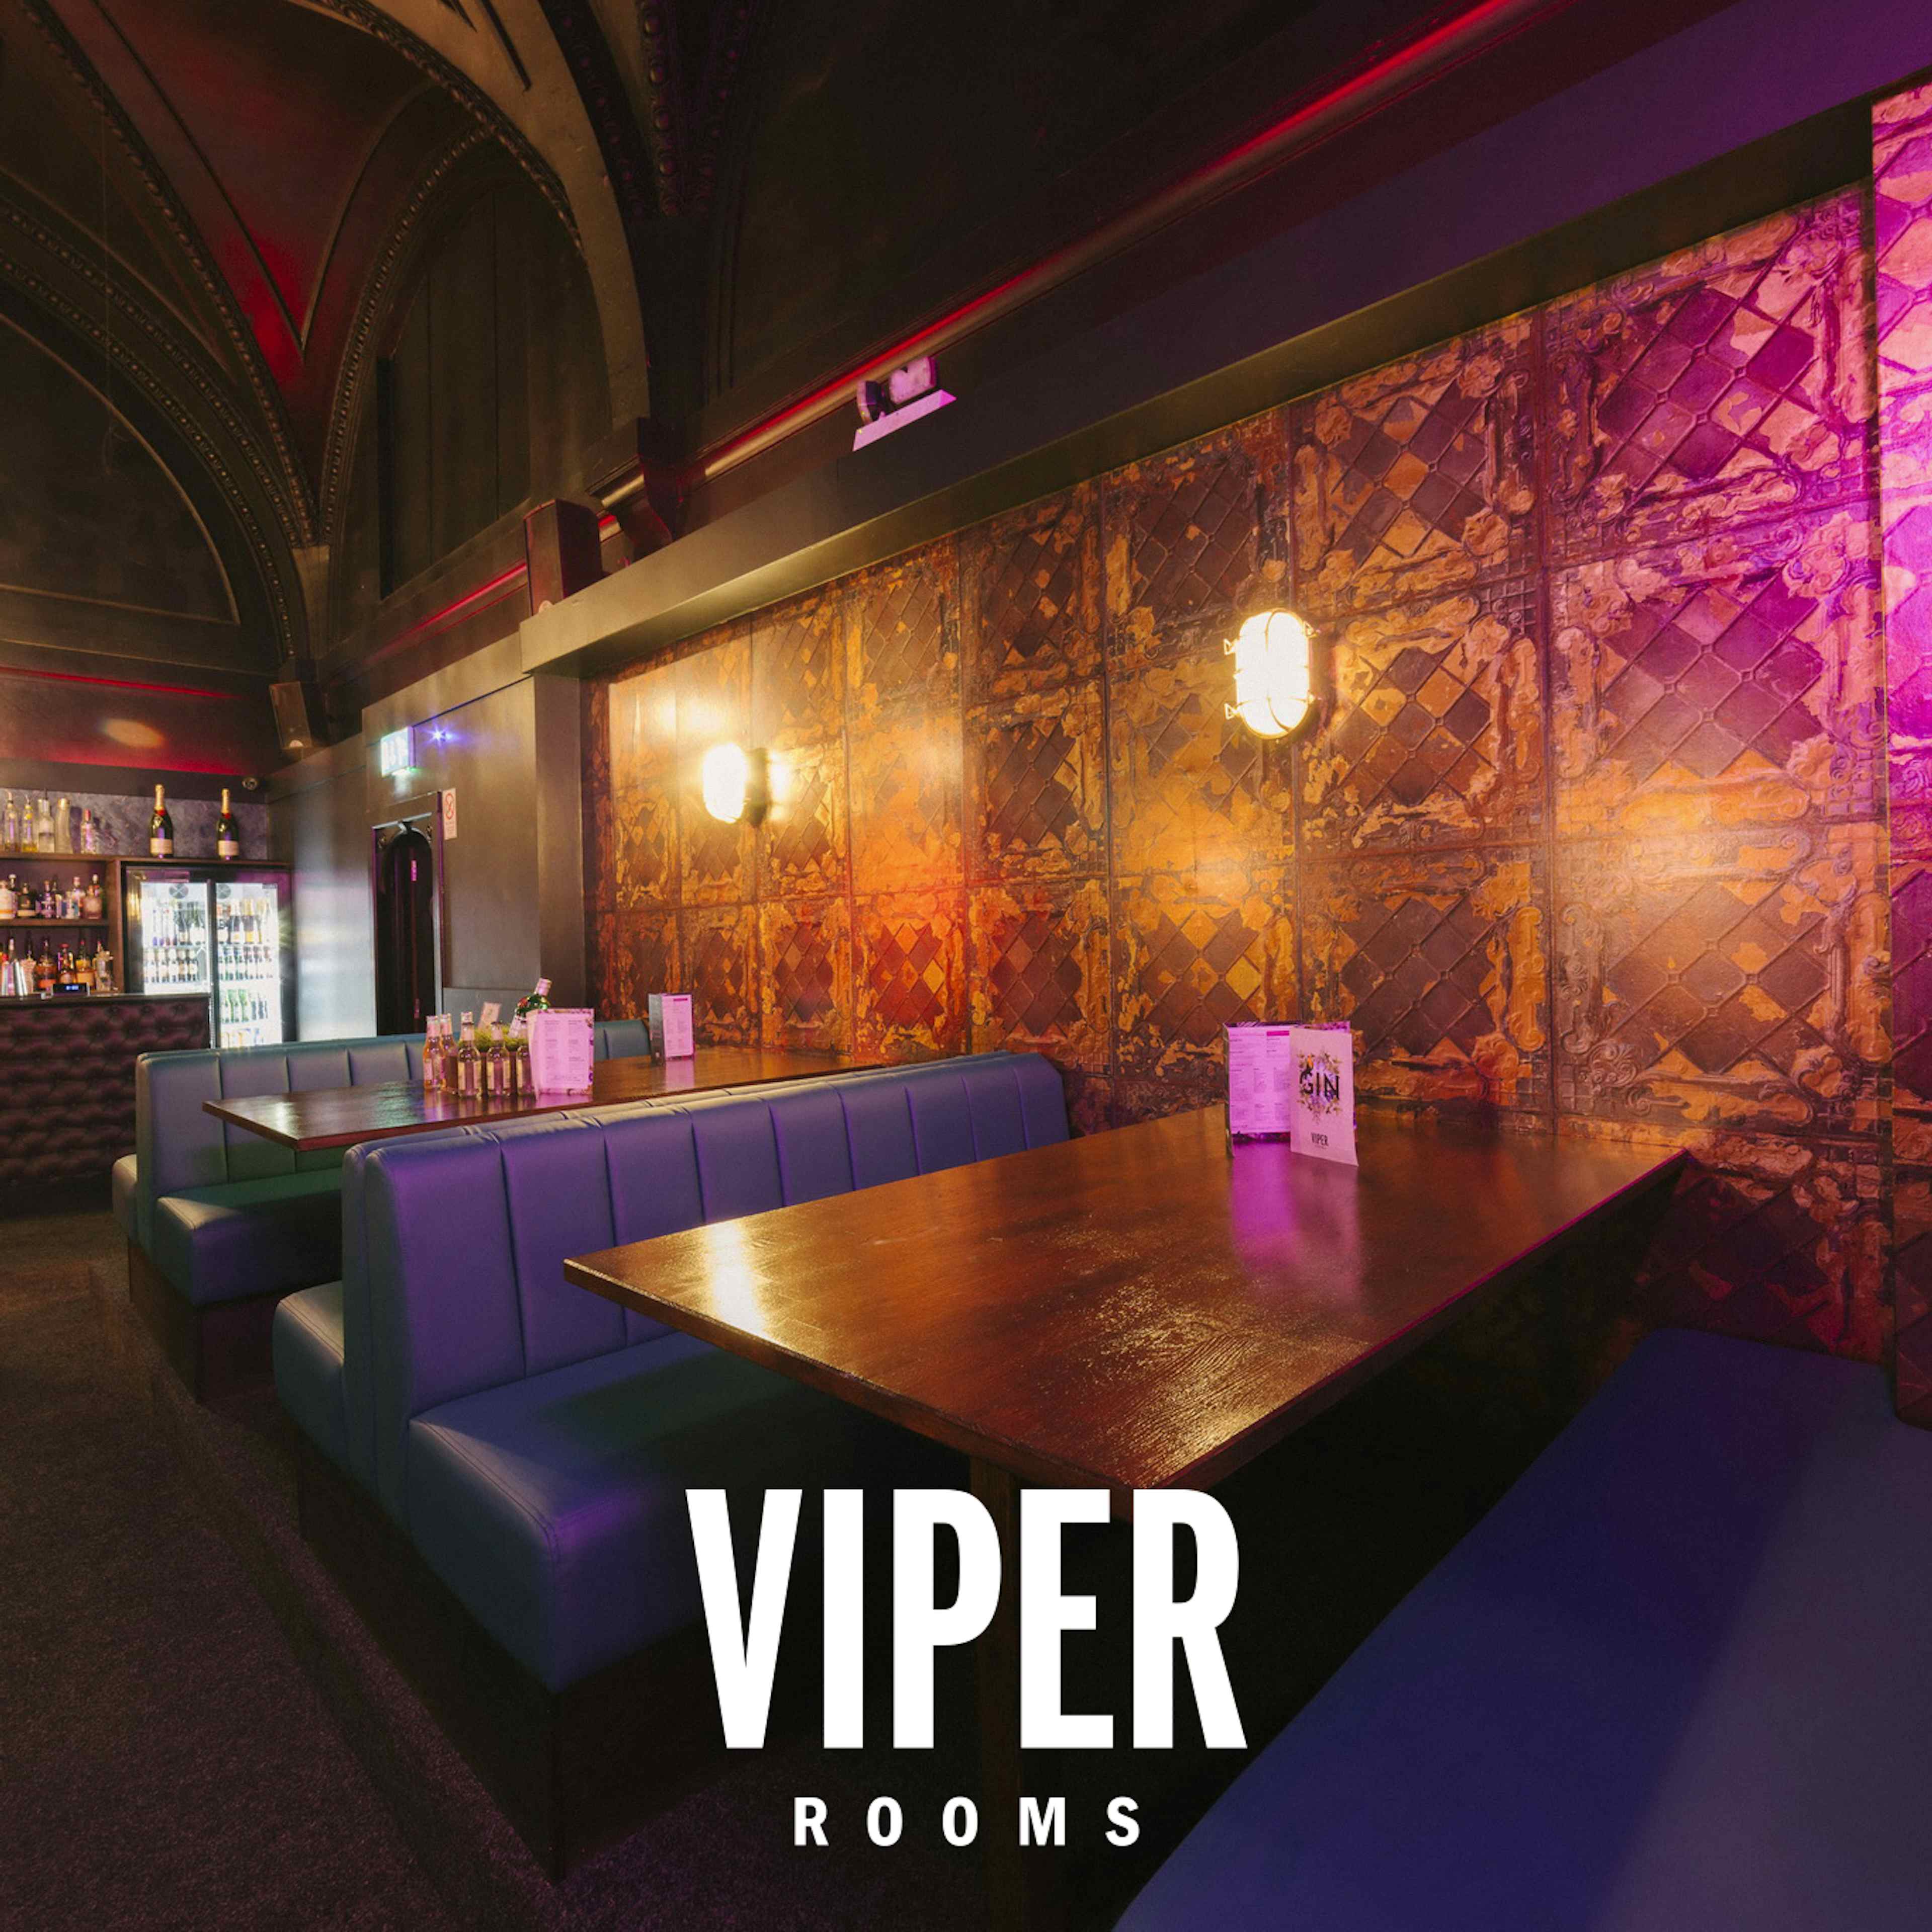 Viper Rooms Harrogate - Viper Rooms image 3